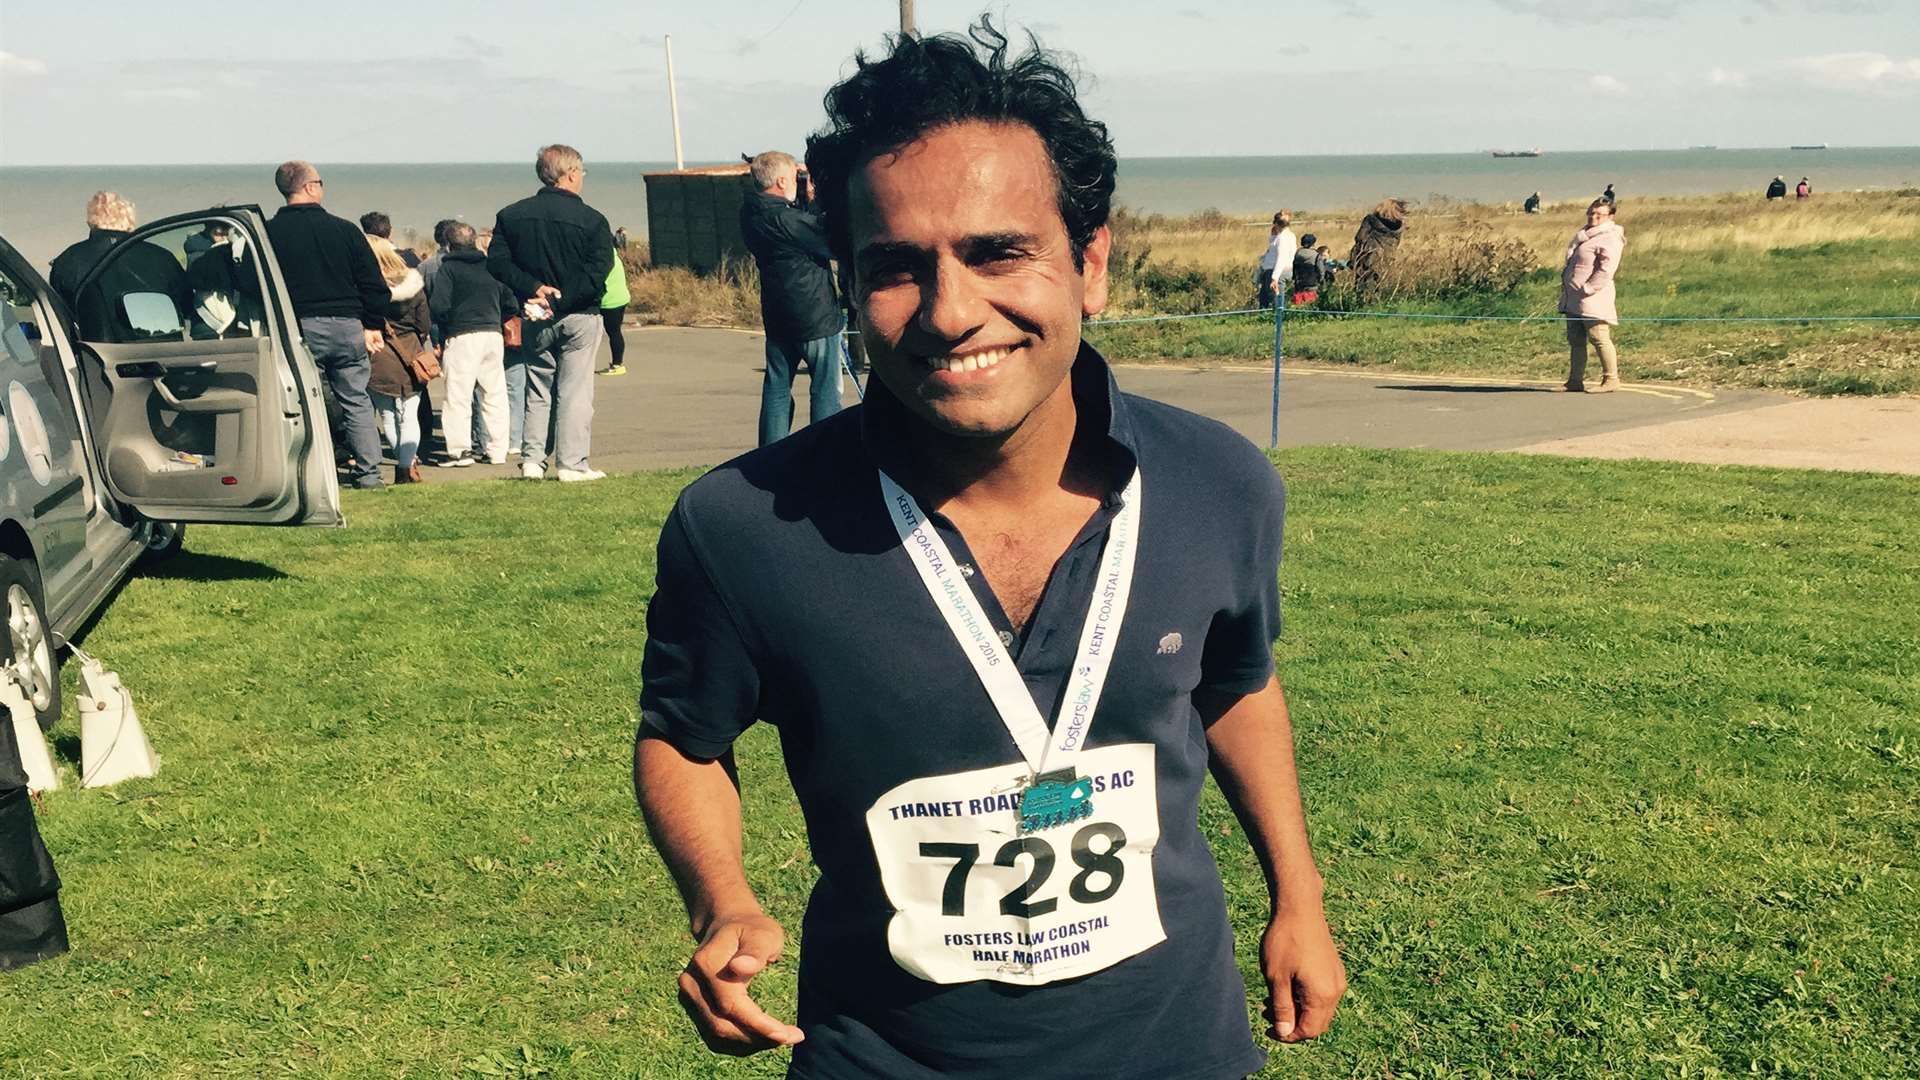 Rehman Chishti MP at the Fosters Law Kent Coastal half marathon